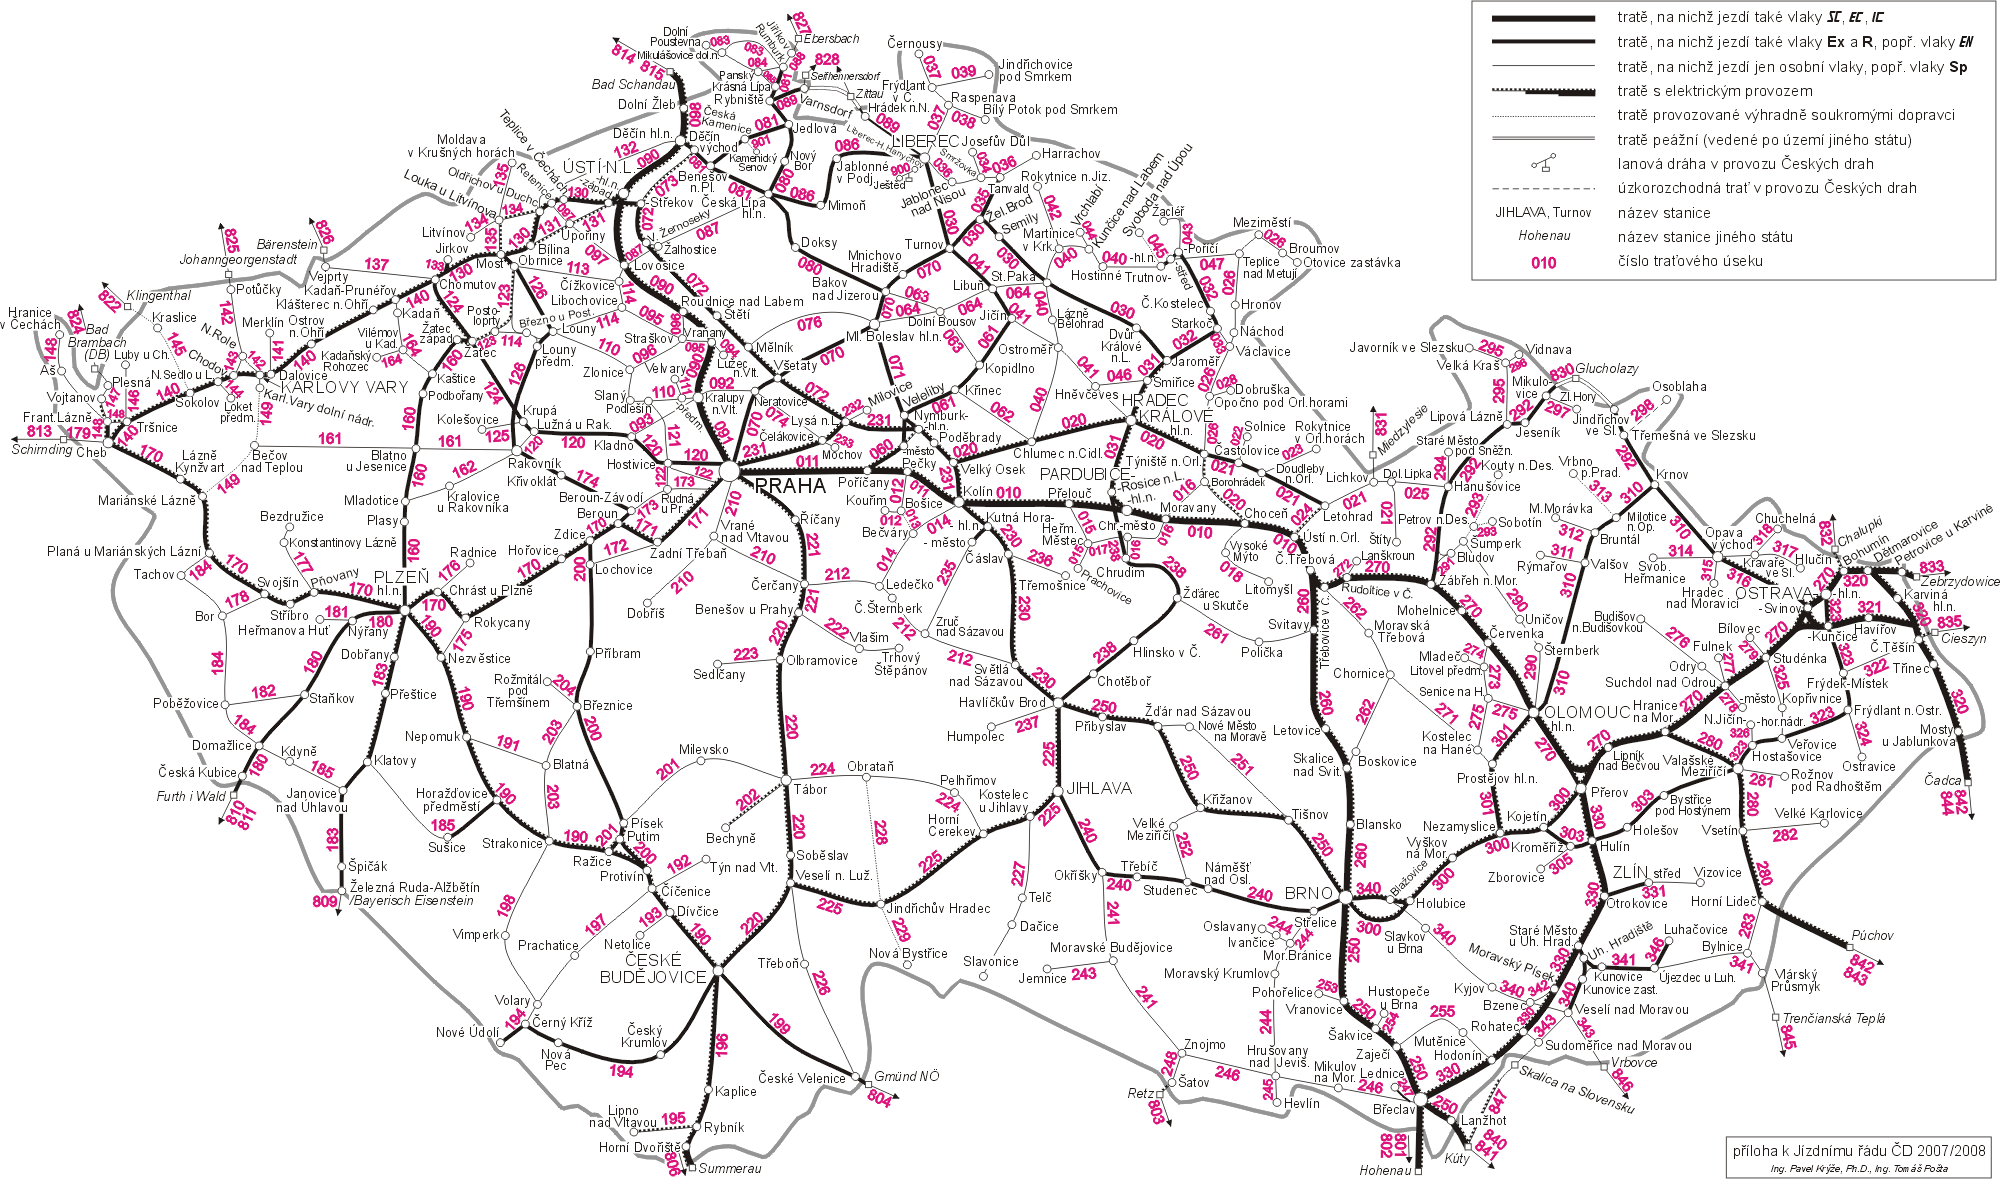 Železniční mapa České republiky - příloha k jízdnímu řádu 2007/2008